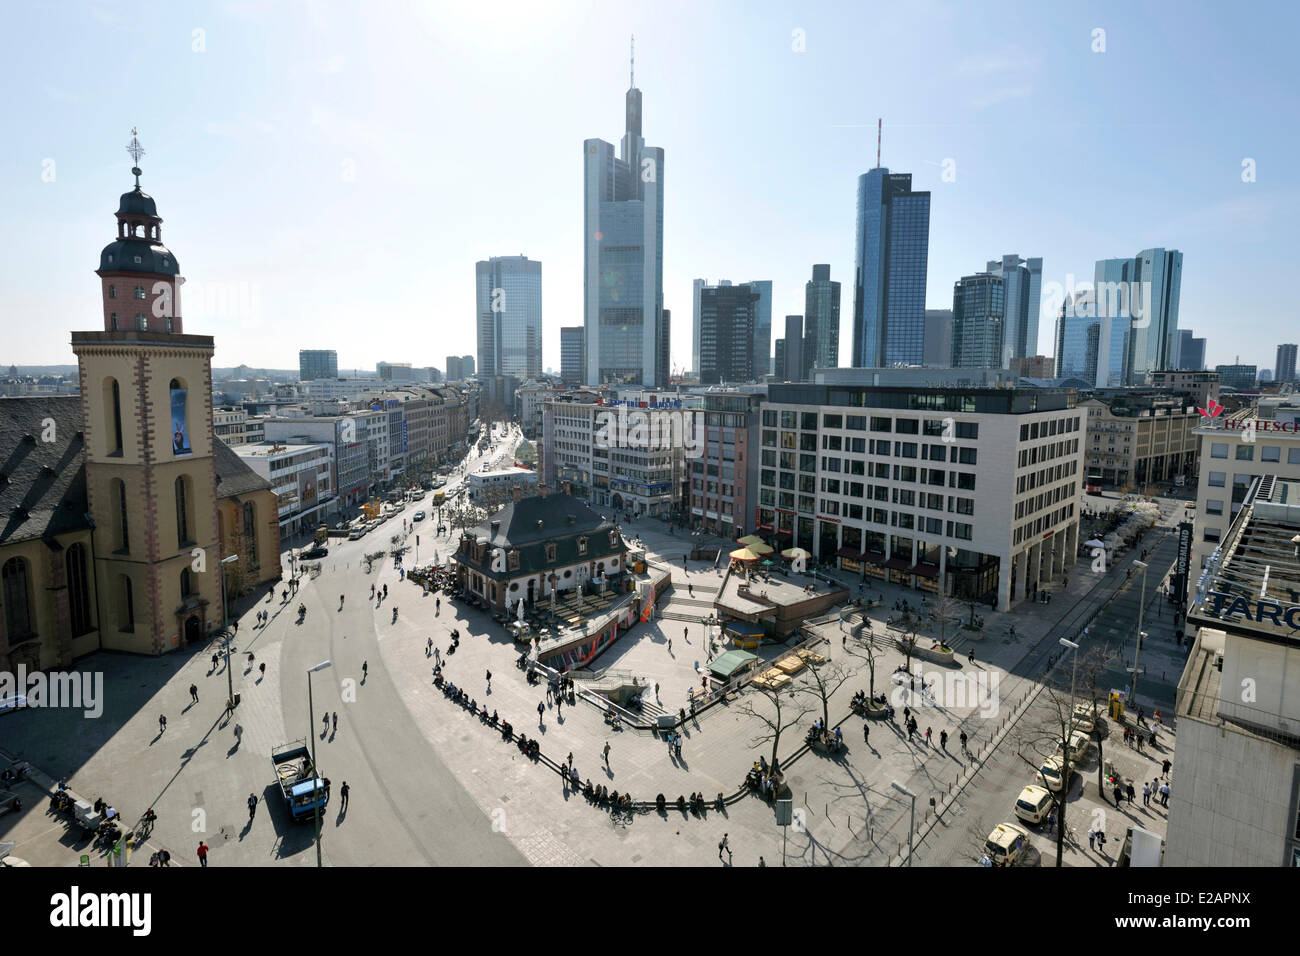 Allemagne, Hesse, Frankfurt am Main, Hauptwache et Katharinenkirche avec gratte-ciel en arrière-plan Banque D'Images